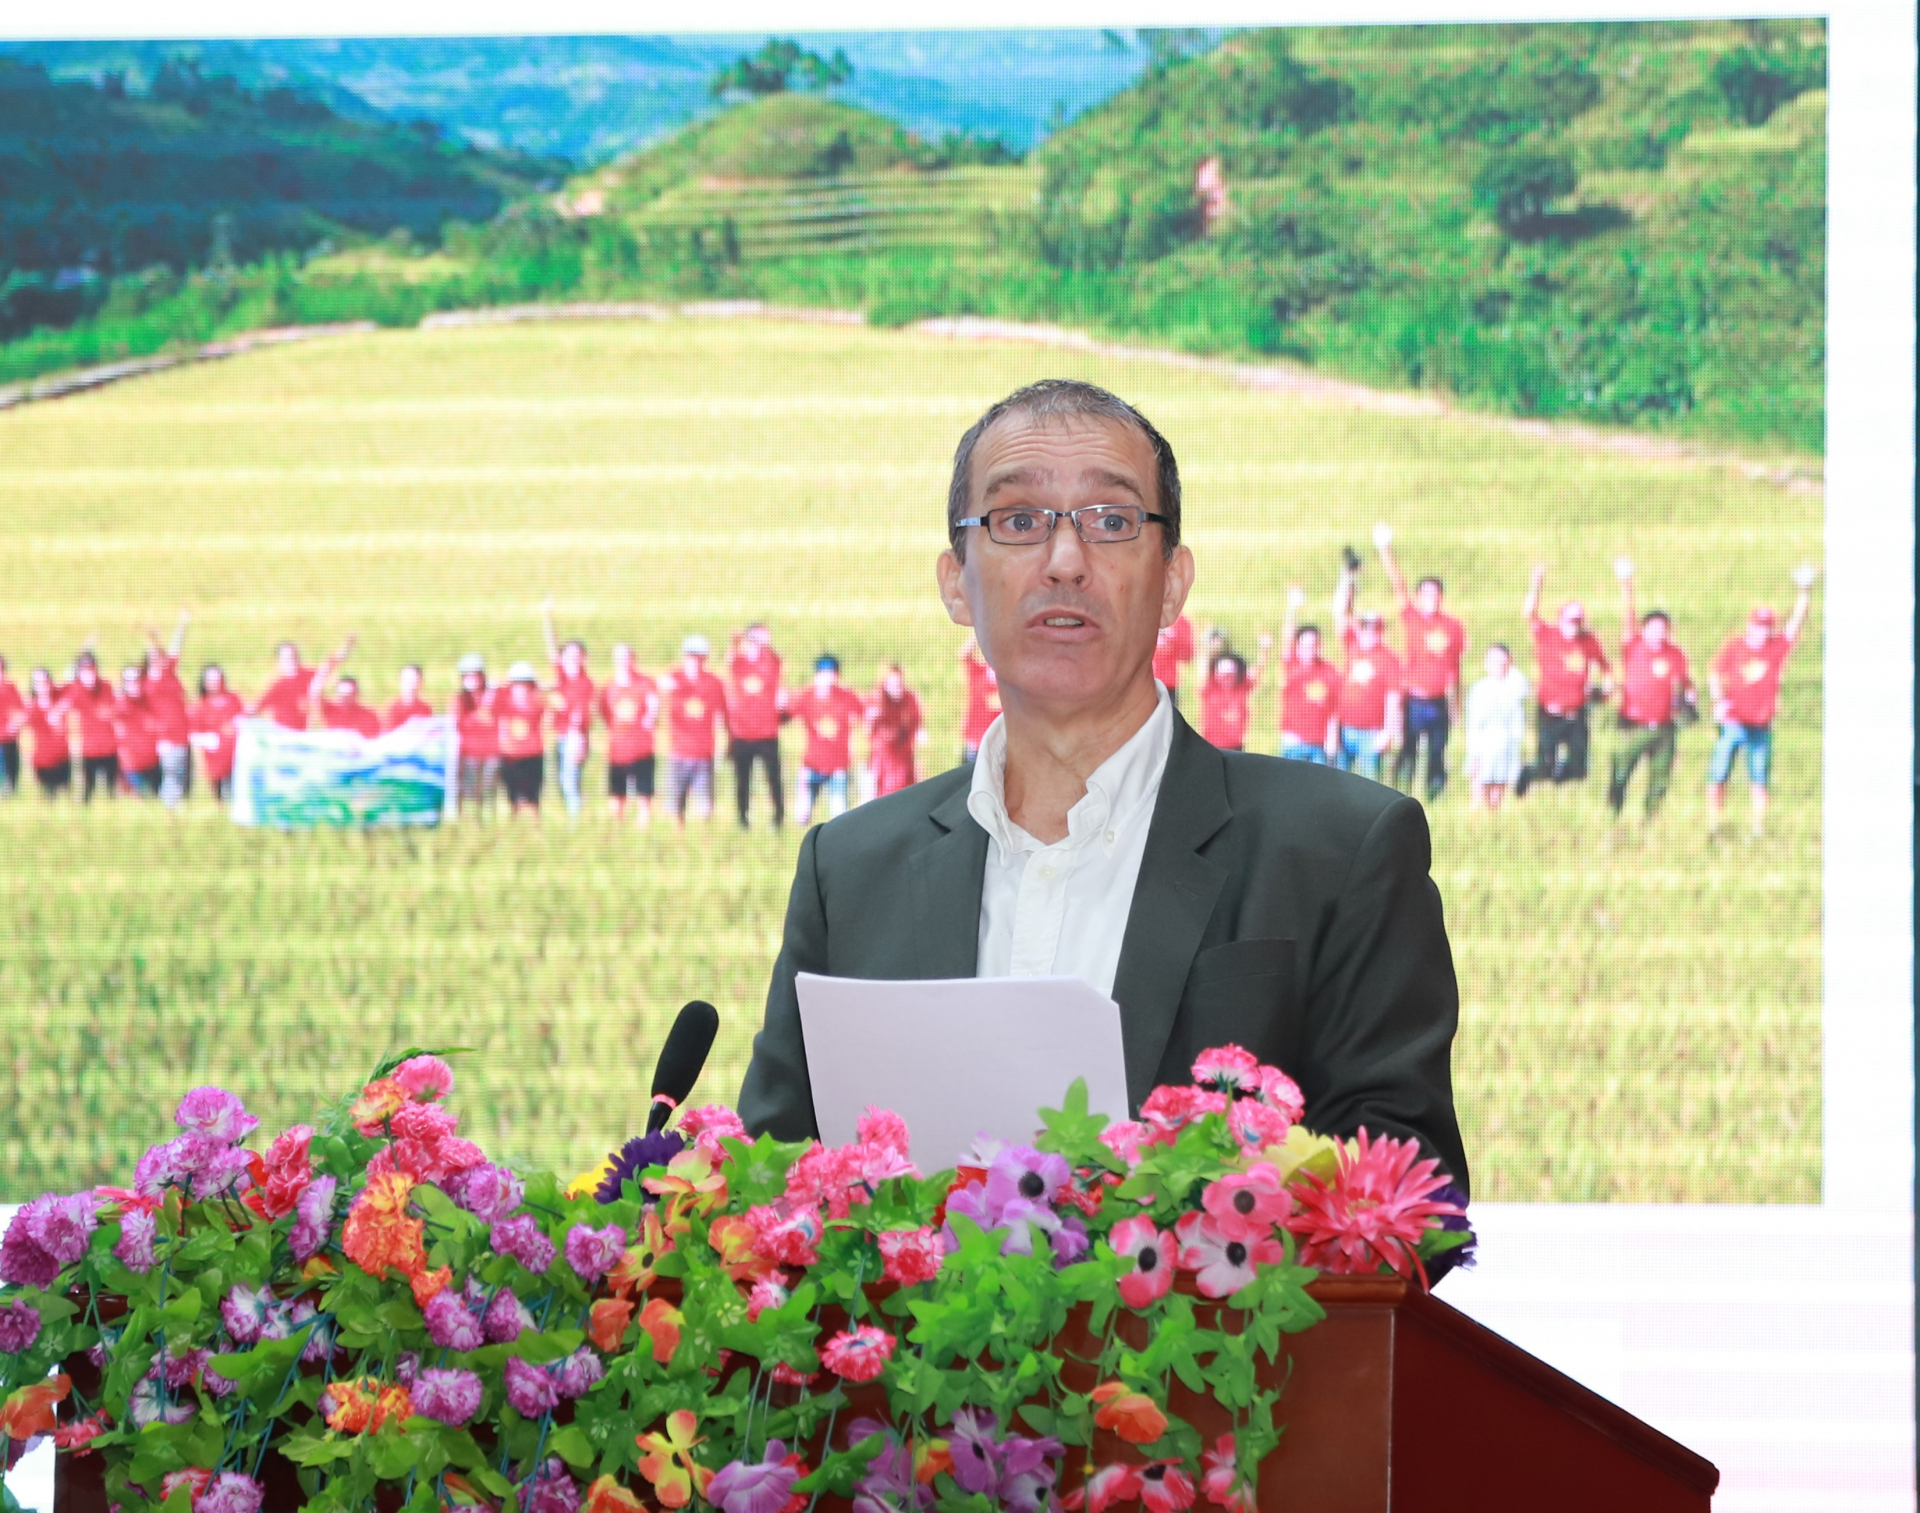 Ông Kenneth Wood, Giám đốc Dự án Du lịch Thụy Sỹ vì sự phát triển bền vững tại Việt Nam tham luận tại hội thảo.